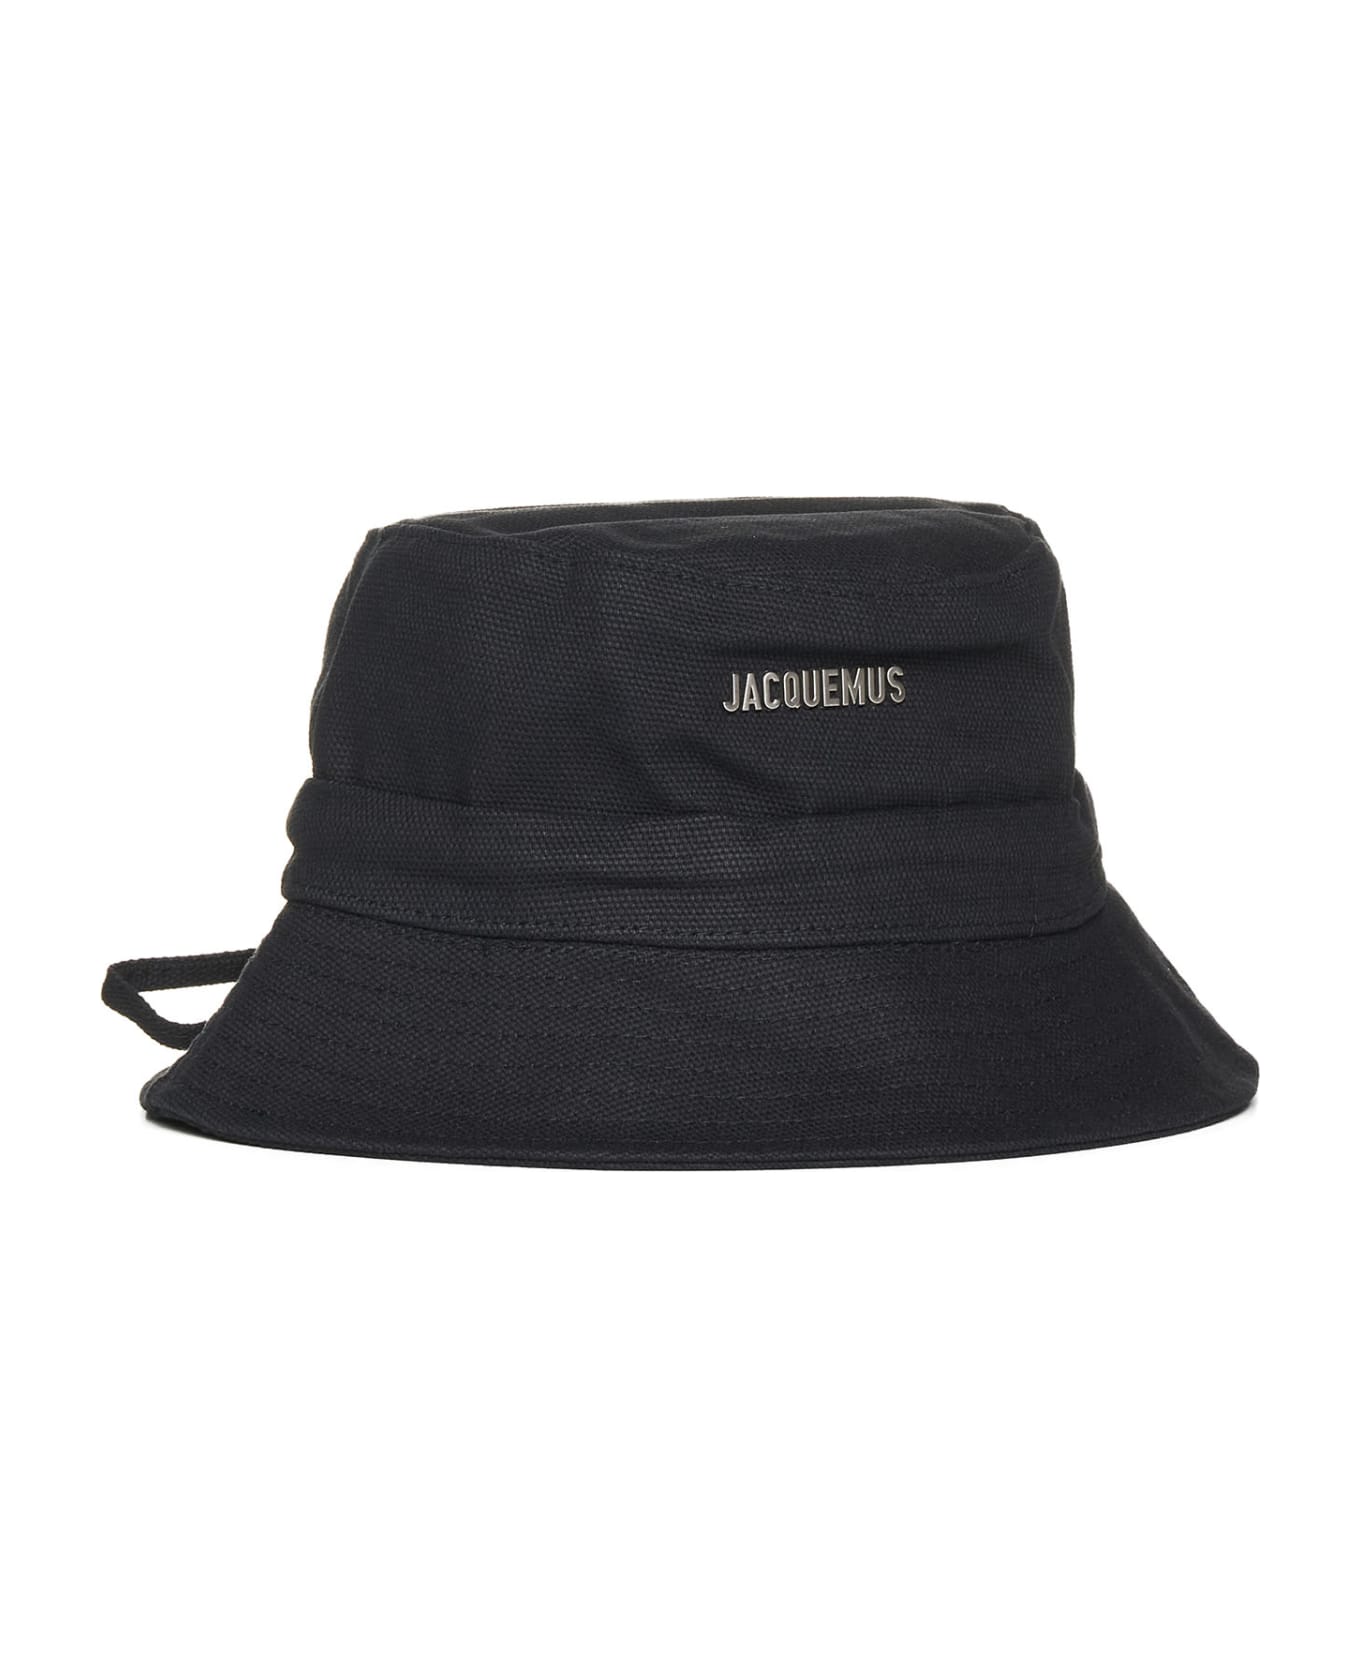 Jacquemus Hat - Black